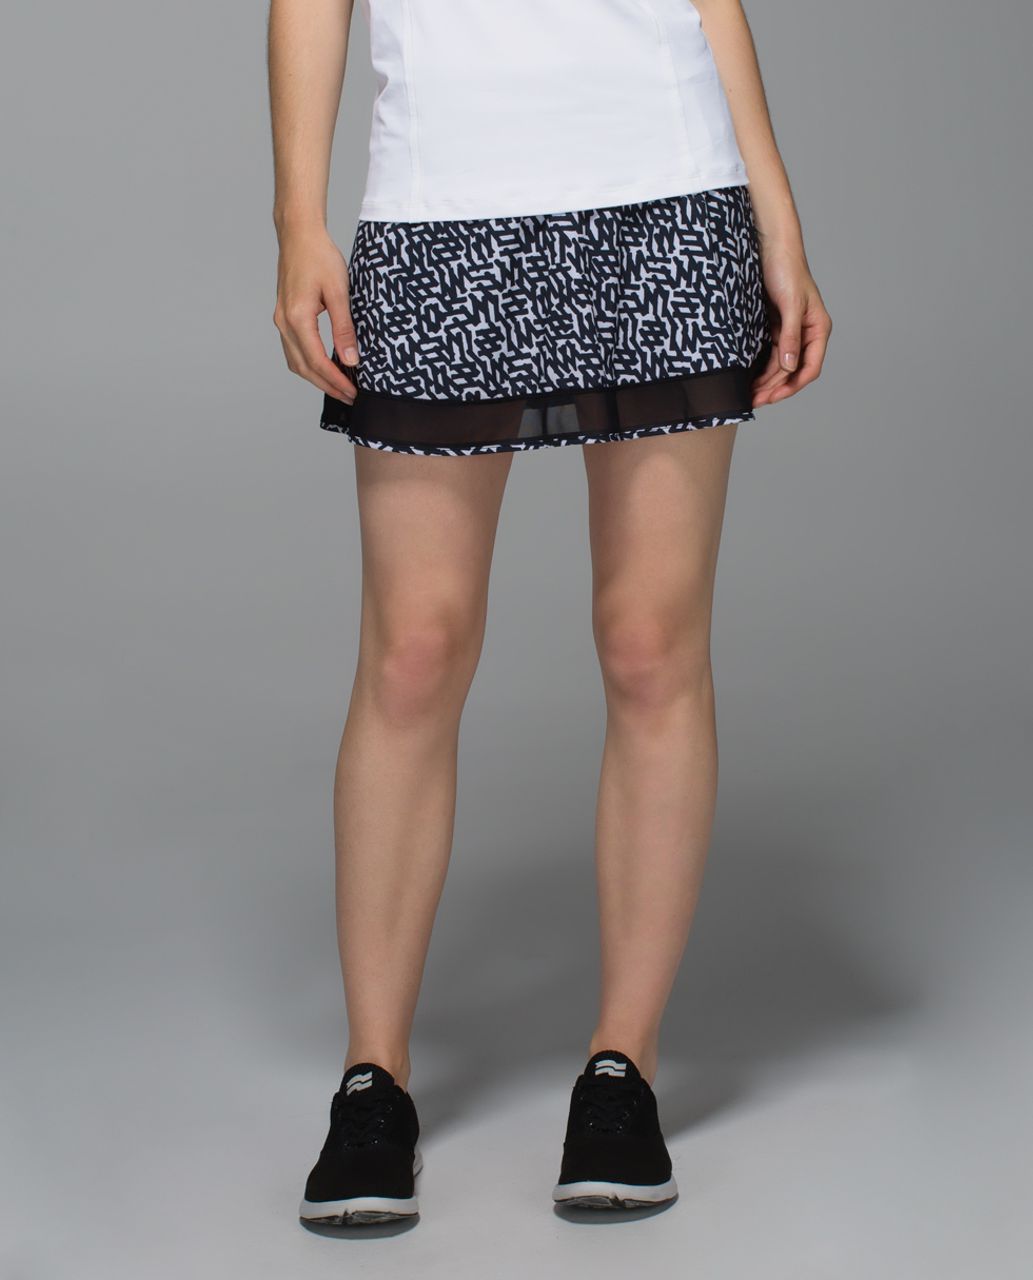 Lululemon Hot Times Skirt - Net Pop White Black / Black